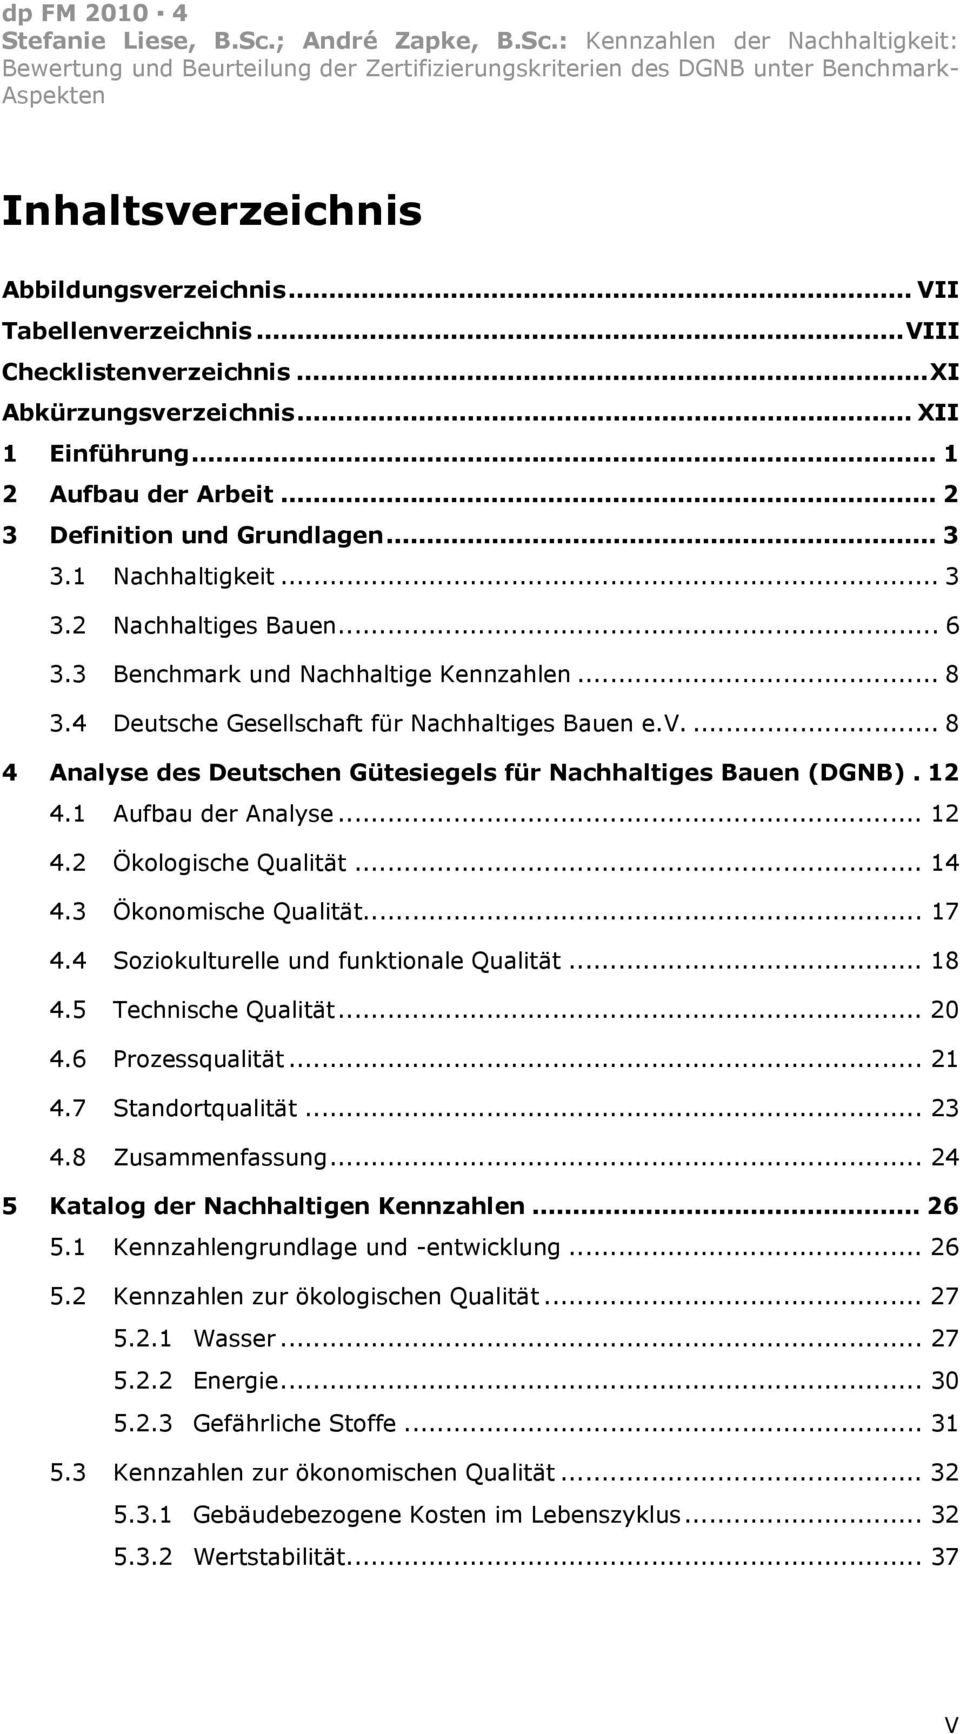 ... 8 4 Analyse des Deutschen Gütesiegels für Nachhaltiges Bauen (DGNB). 12 4.1 Aufbau der Analyse... 12 4.2 Ökologische Qualität... 14 4.3 Ökonomische Qualität... 17 4.